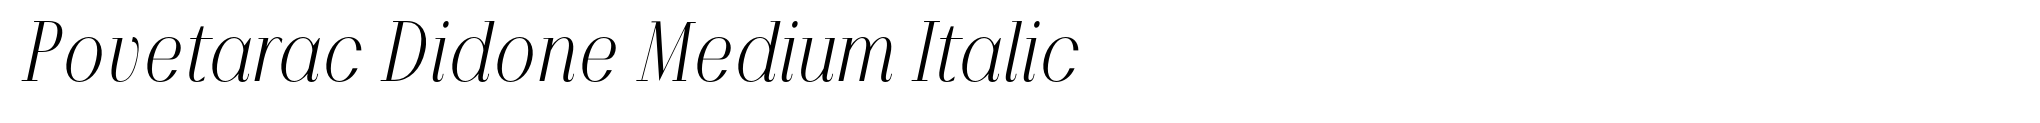 Povetarac Didone Medium Italic image